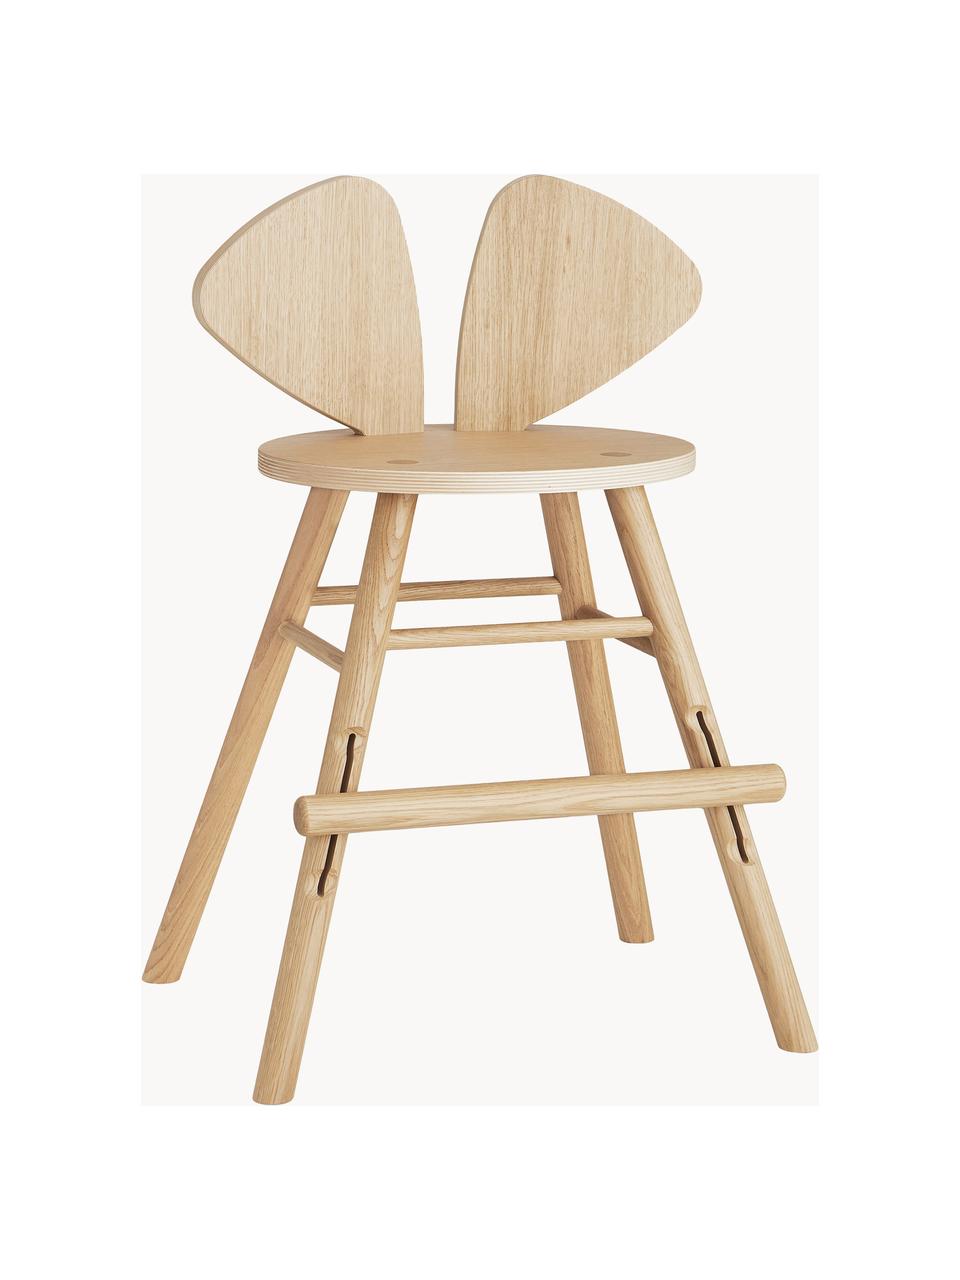 Dětská židle z dubového dřeva Mouse Junior, Dubová dýha, lakovaná

Tento produkt je vyroben z udržitelných zdrojů dřeva s certifikací FSC®., Dubové dřevo, Š 52 cm, H 41 cm